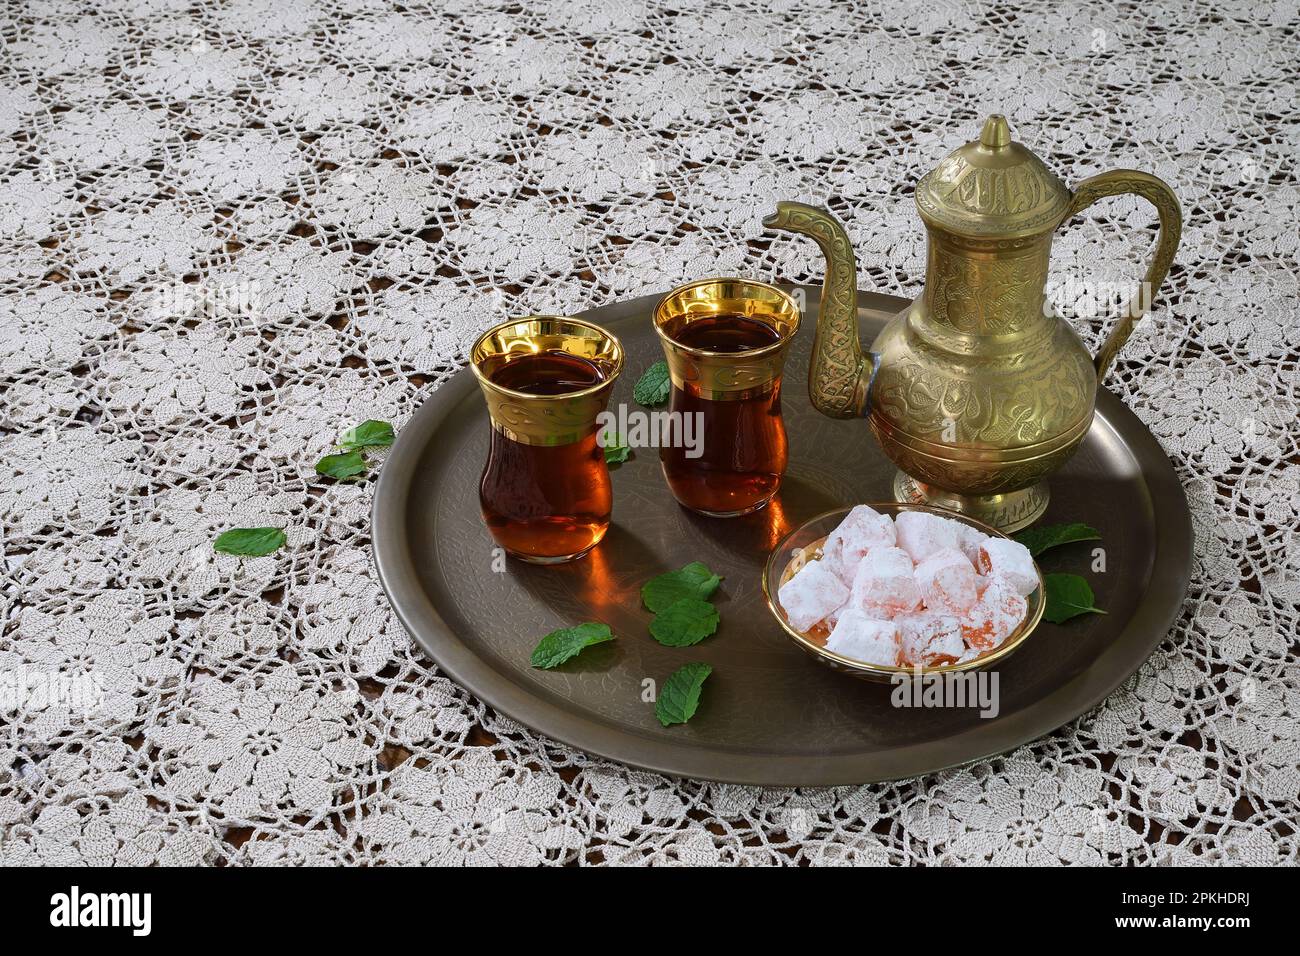 Théière turque ornée, classique et festive, deux verres et délices turcs traditionnels sur un plateau et une nappe en dentelle blanche dans un éclairage tamisé Banque D'Images